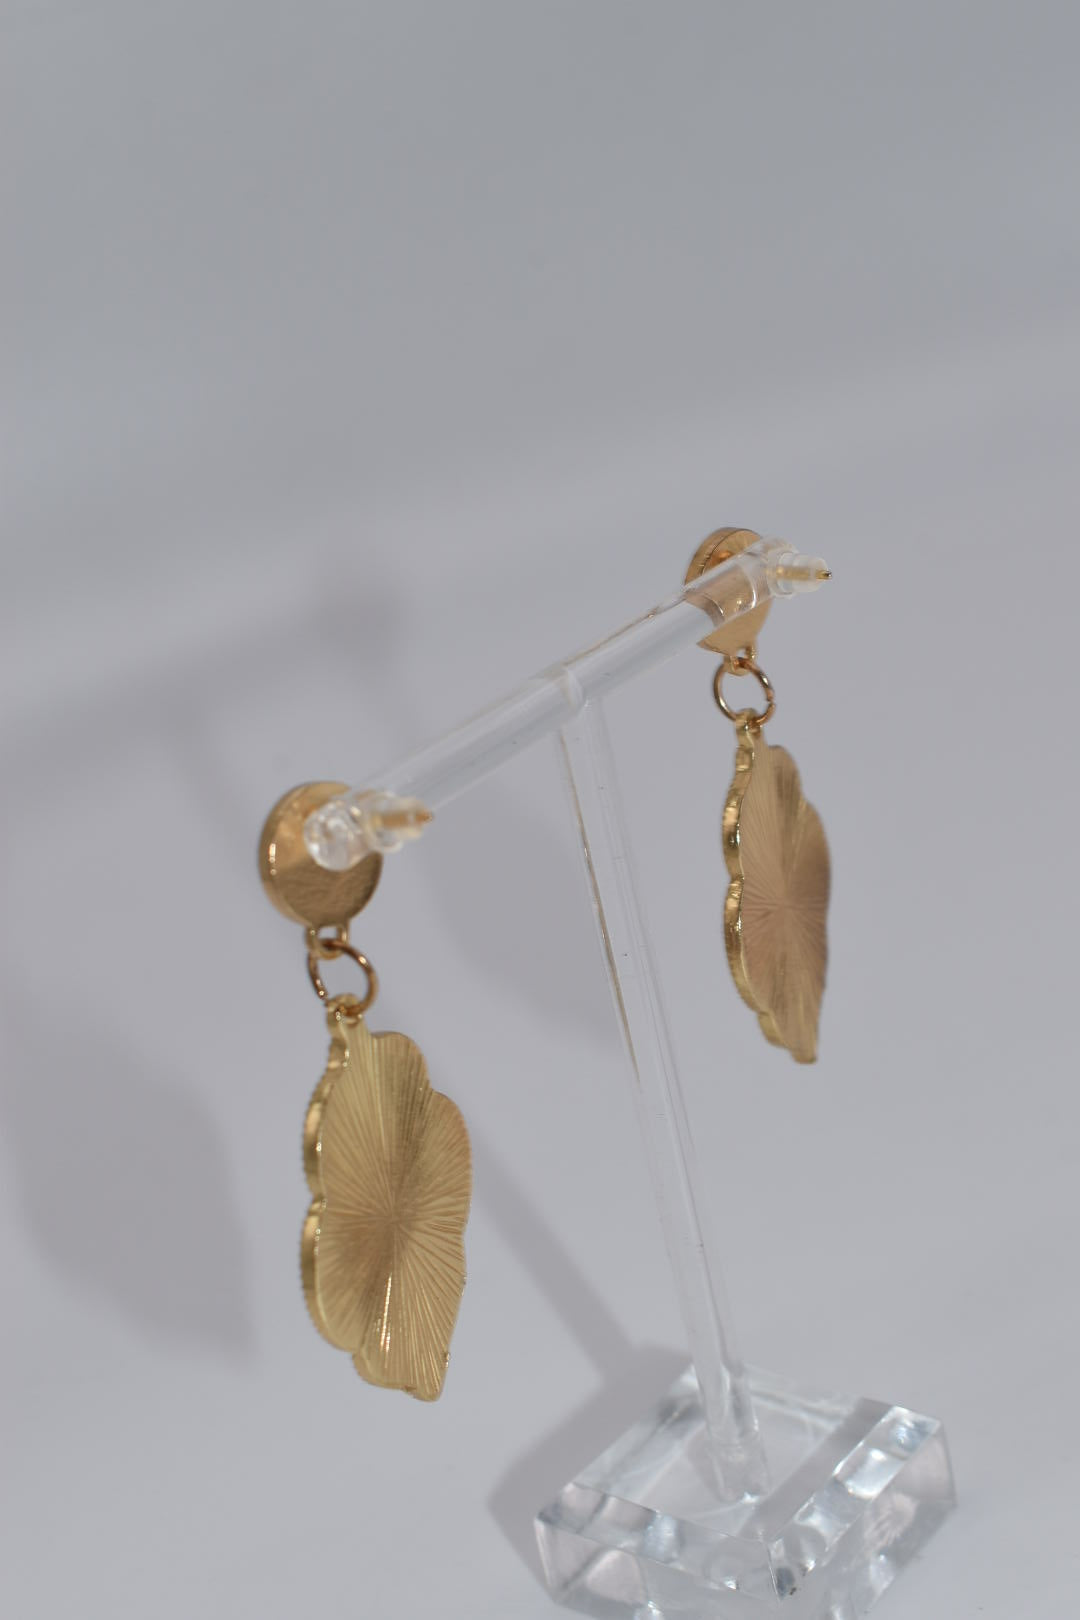 Statement Earrings: "It's All Gold" Glitter Drop Earrings